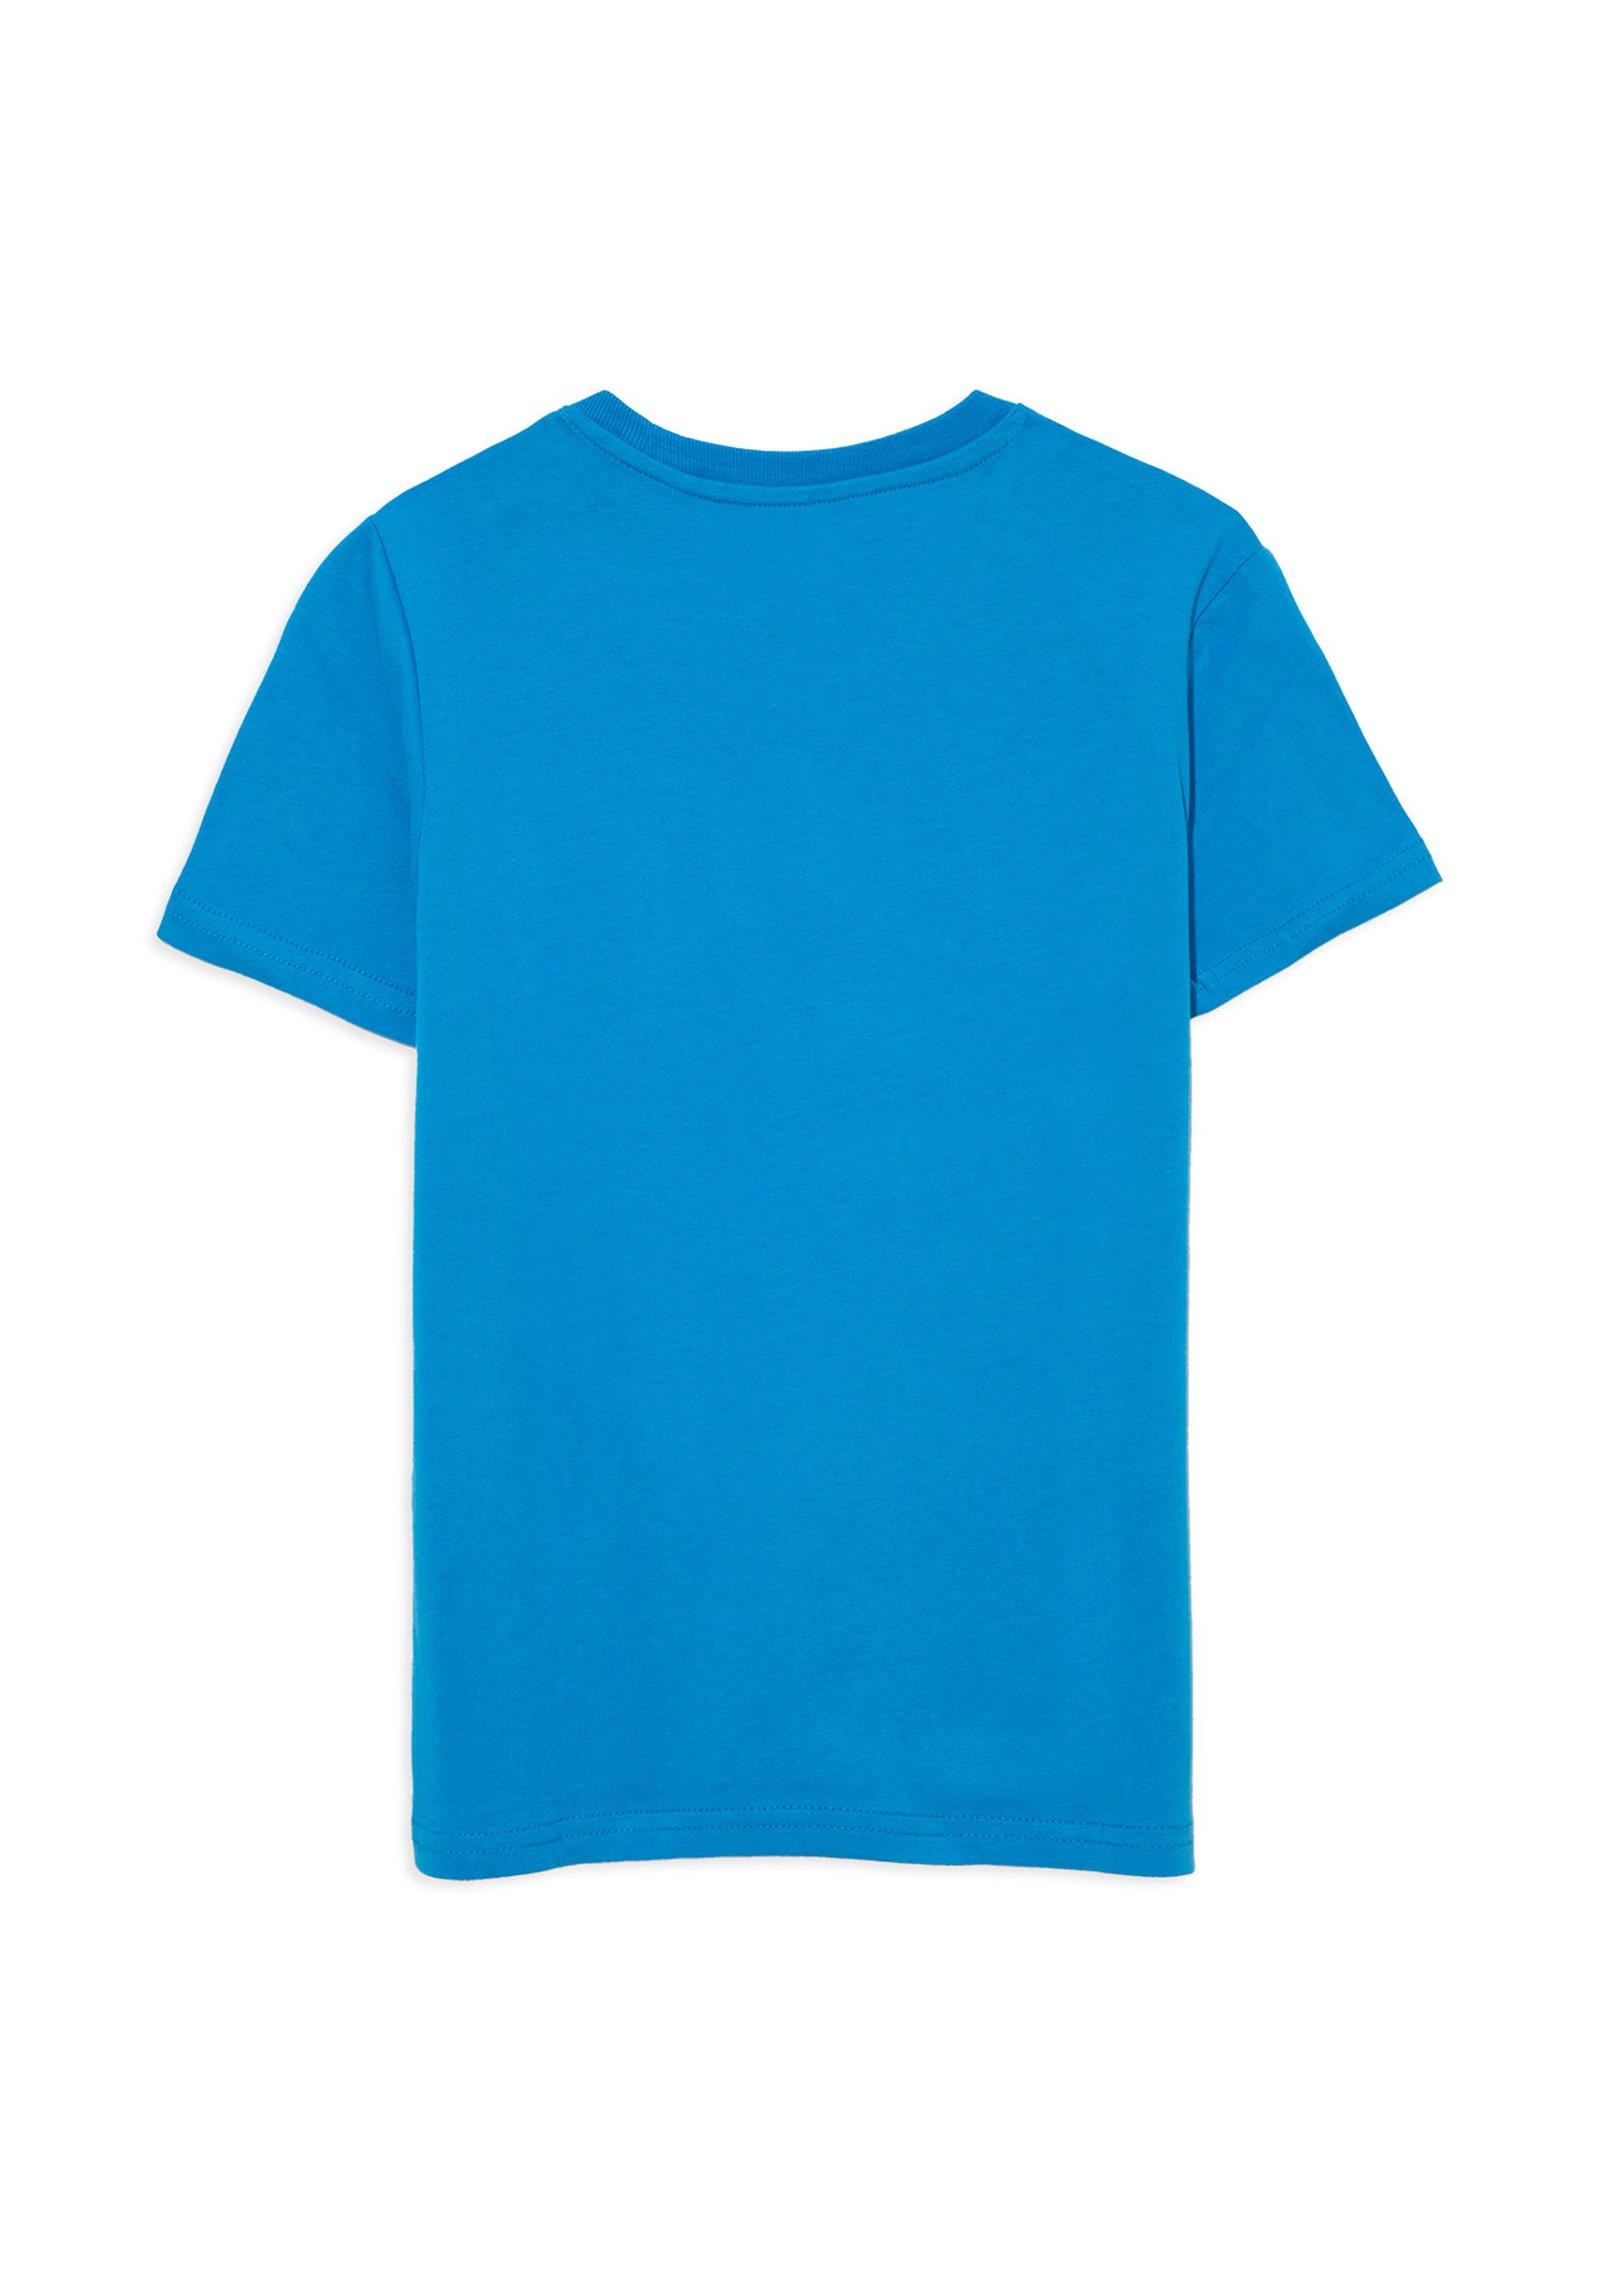 Mavi Mavi Balık Logo Baskılı Mavi Tişört Regular Fit / Normal Kesim 6610111-70882